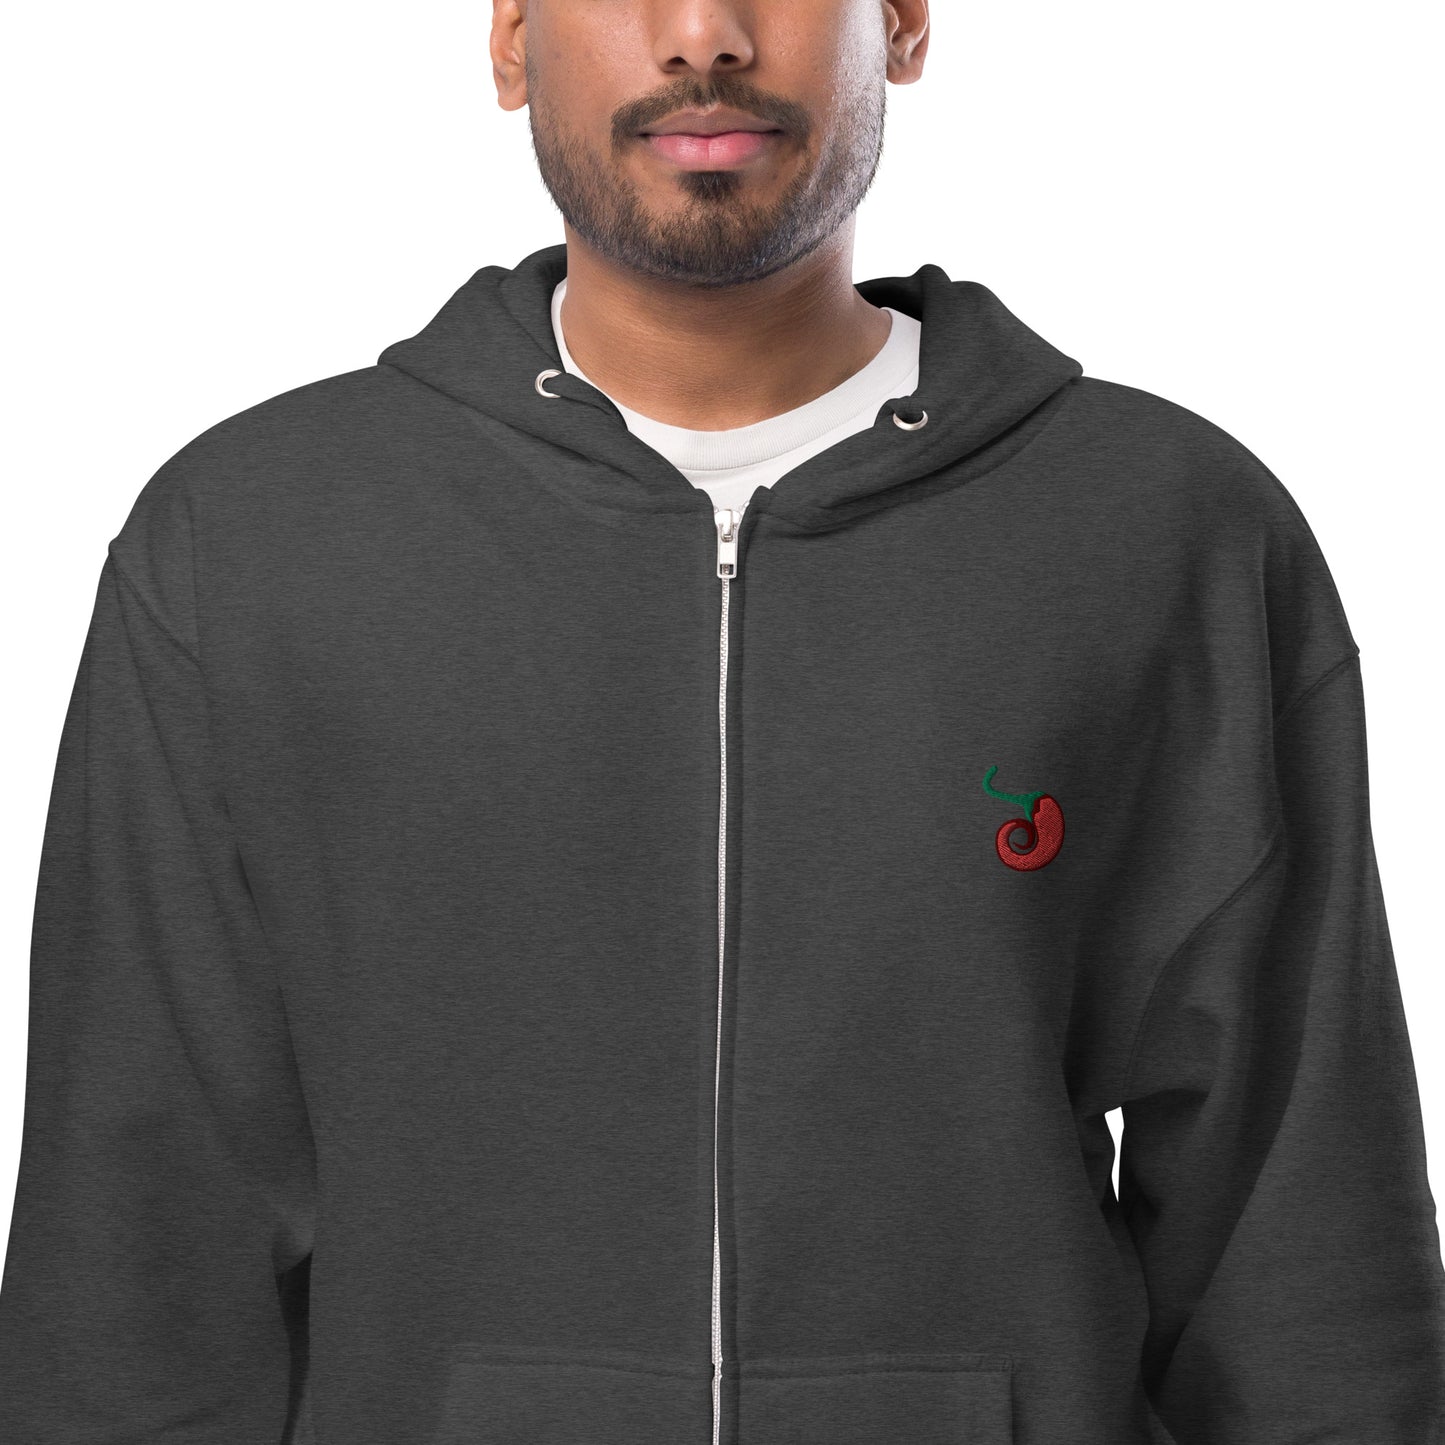 Chile Pepper Unisex fleece zip up hoodie